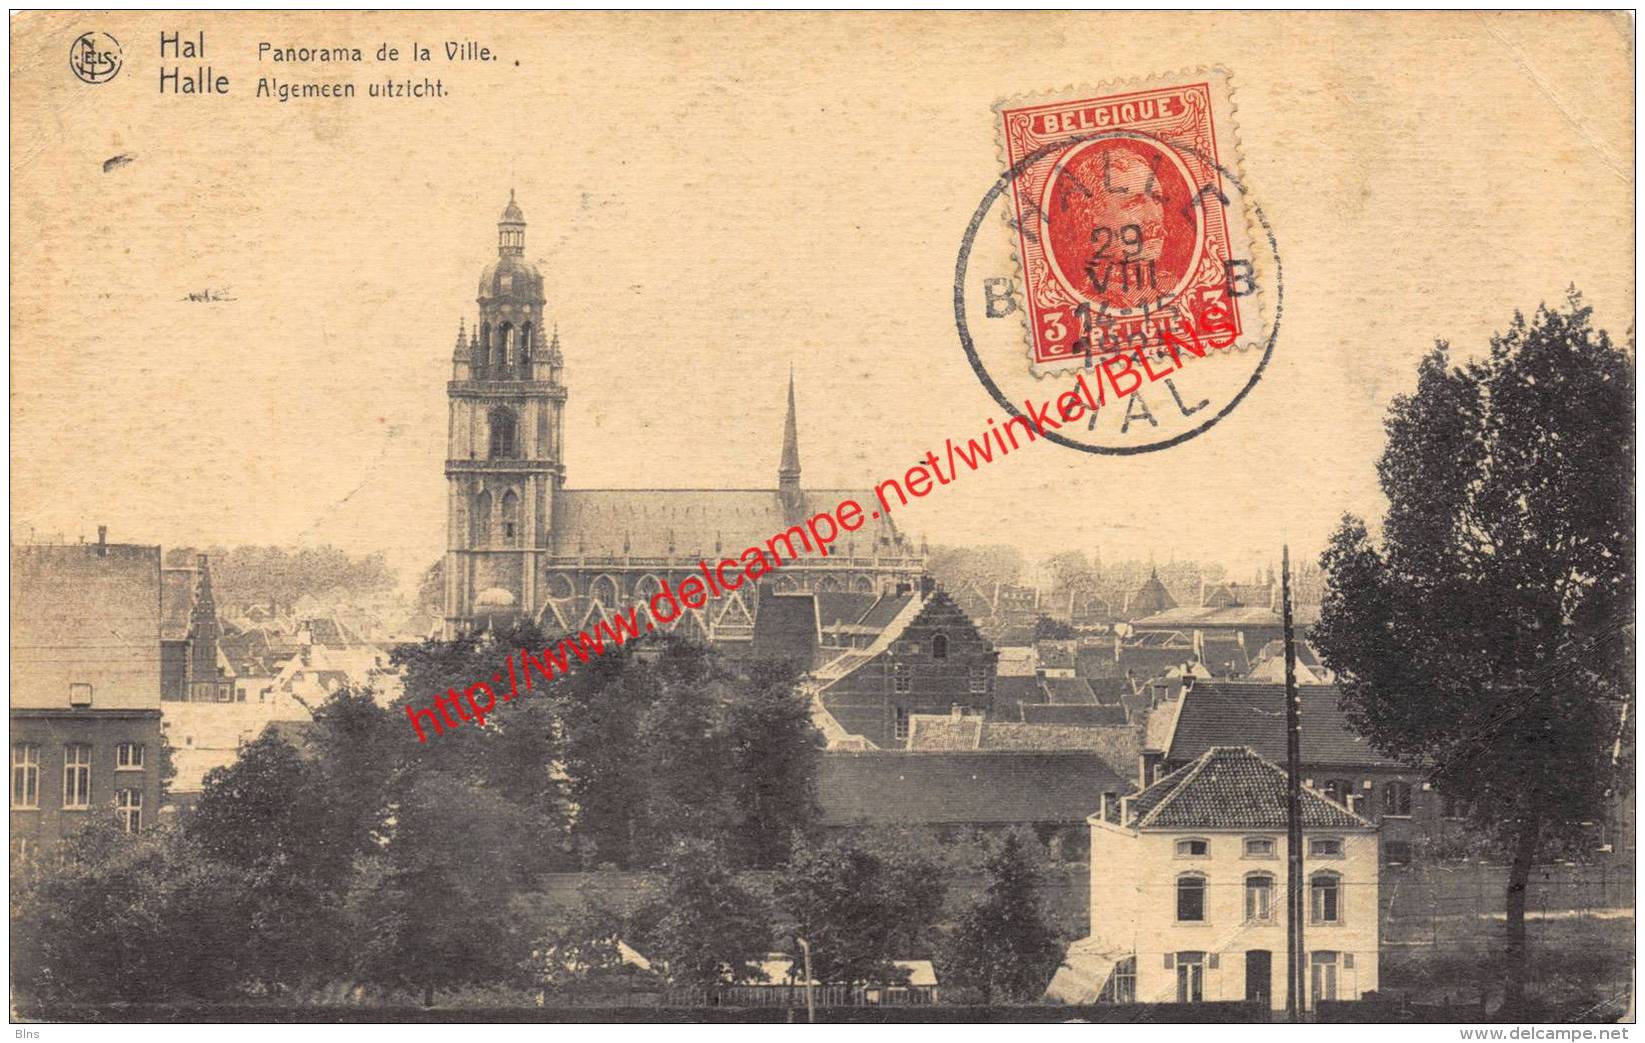 Panorama De La Ville - 1925 - Halle - Halle